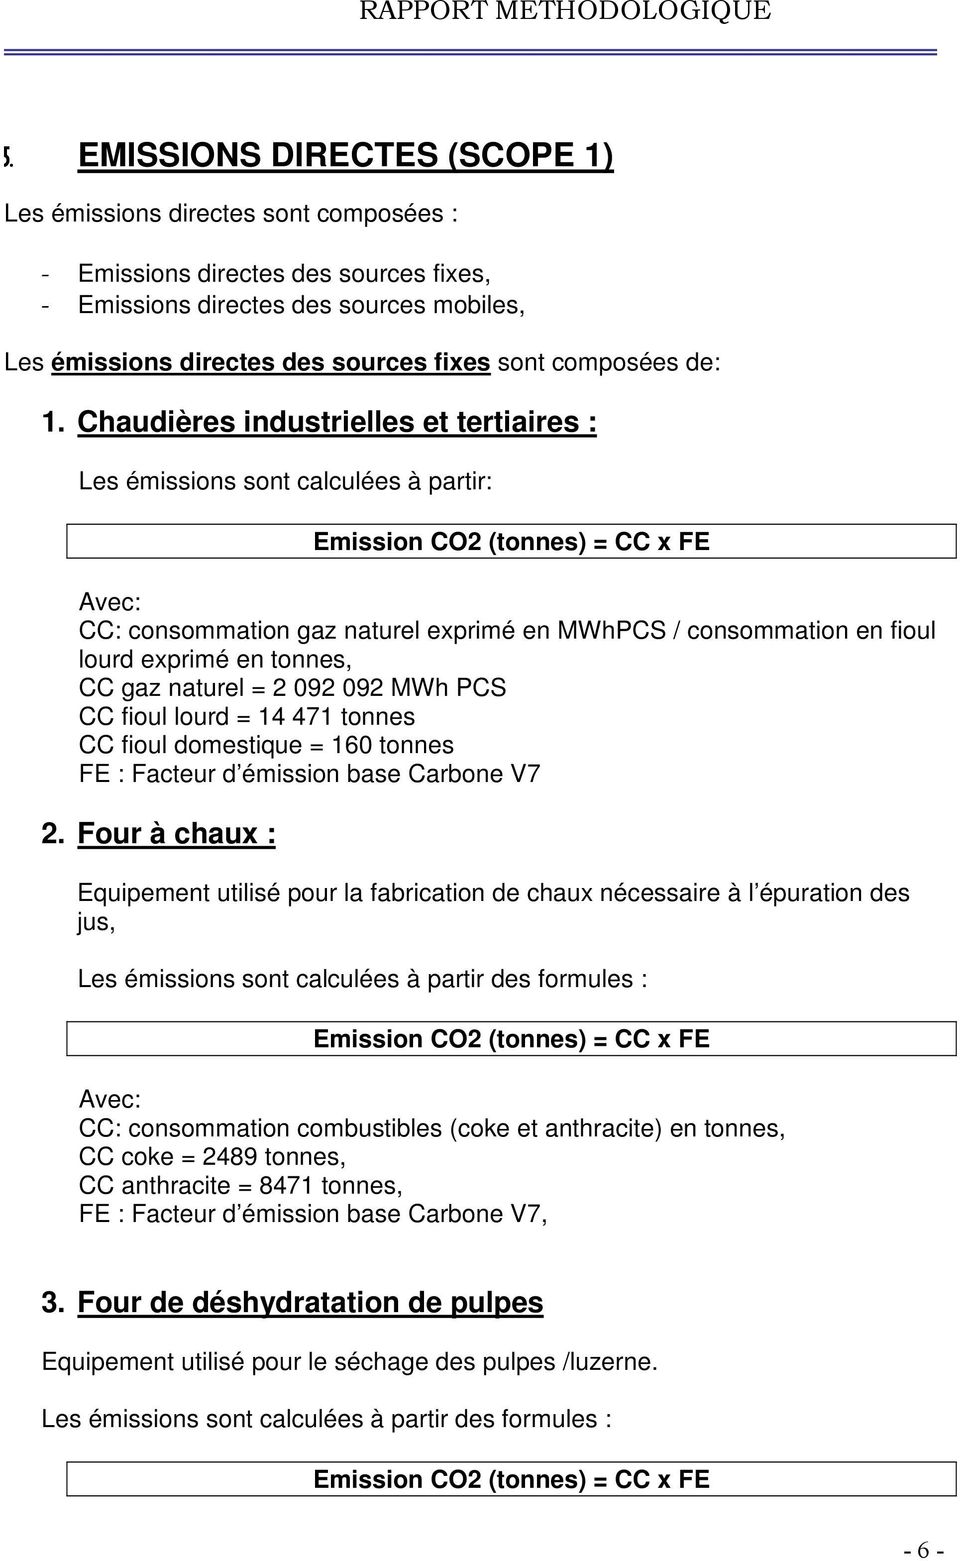 Chaudières industrielles et tertiaires : Les émissions sont calculées à partir: Emission CO2 (tonnes) = CC x FE CC: consommation gaz naturel exprimé en MWhPCS / consommation en fioul lourd exprimé en